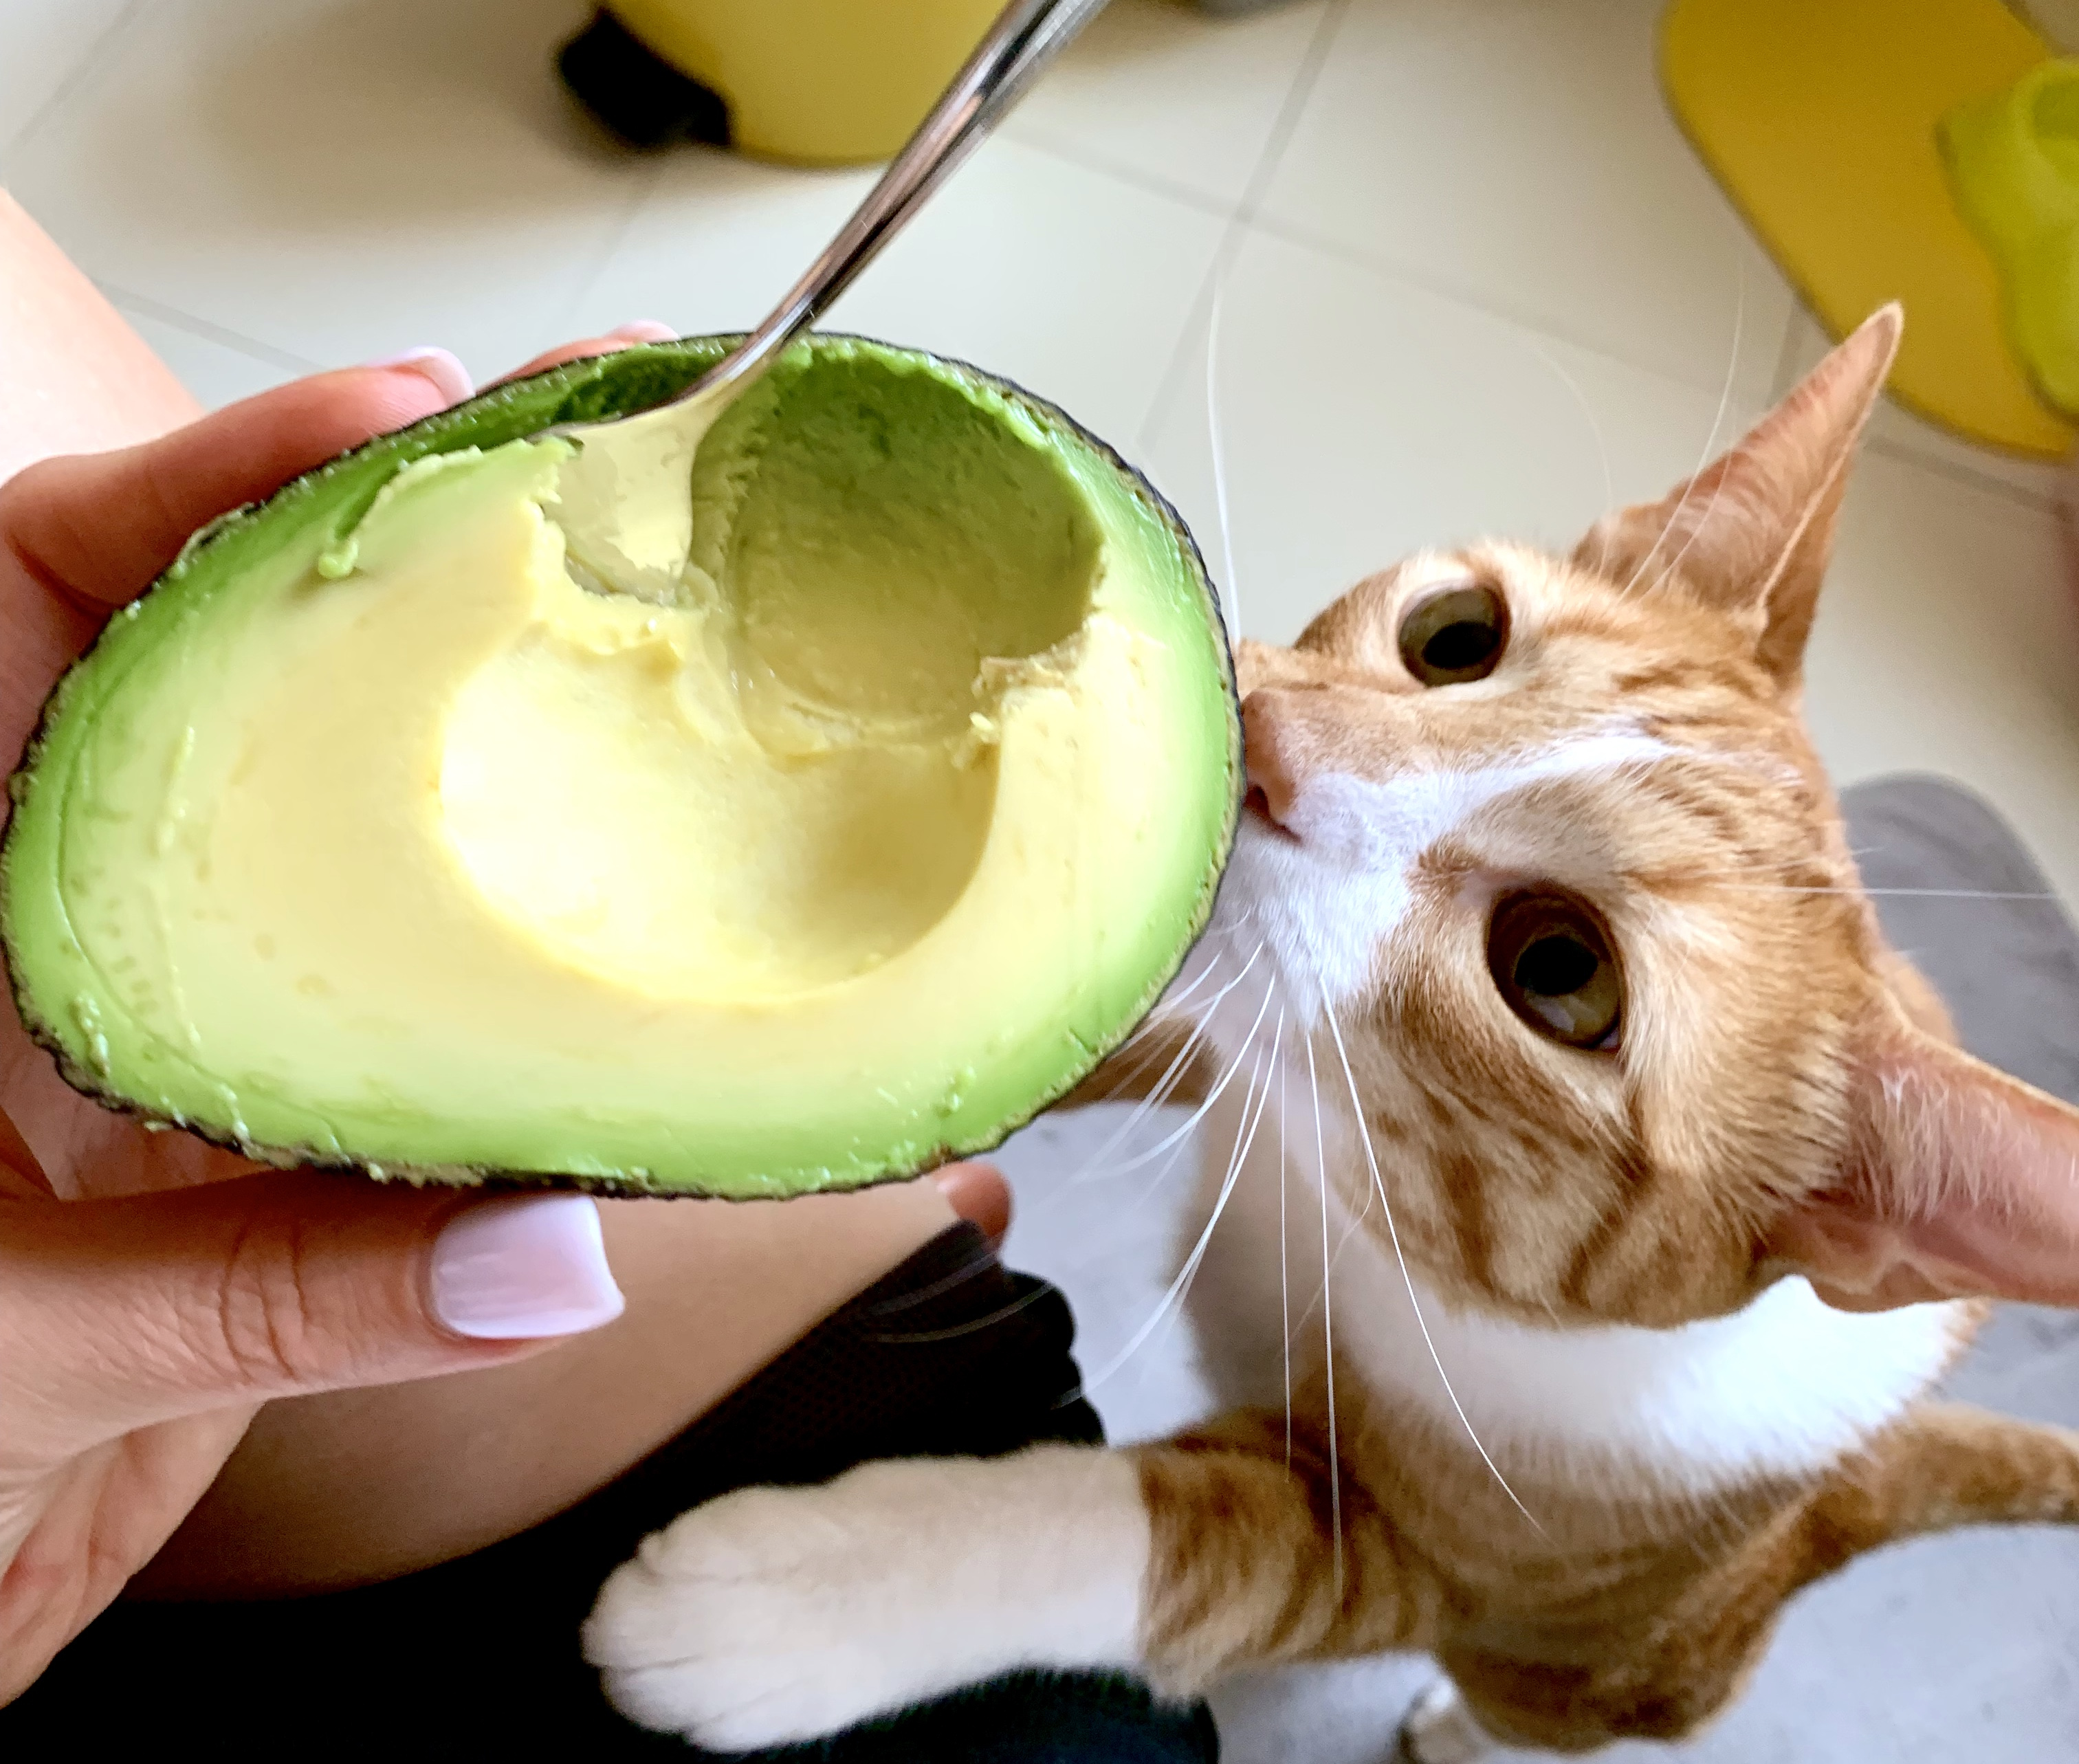 Ginger tabby sniffs fresh avocado